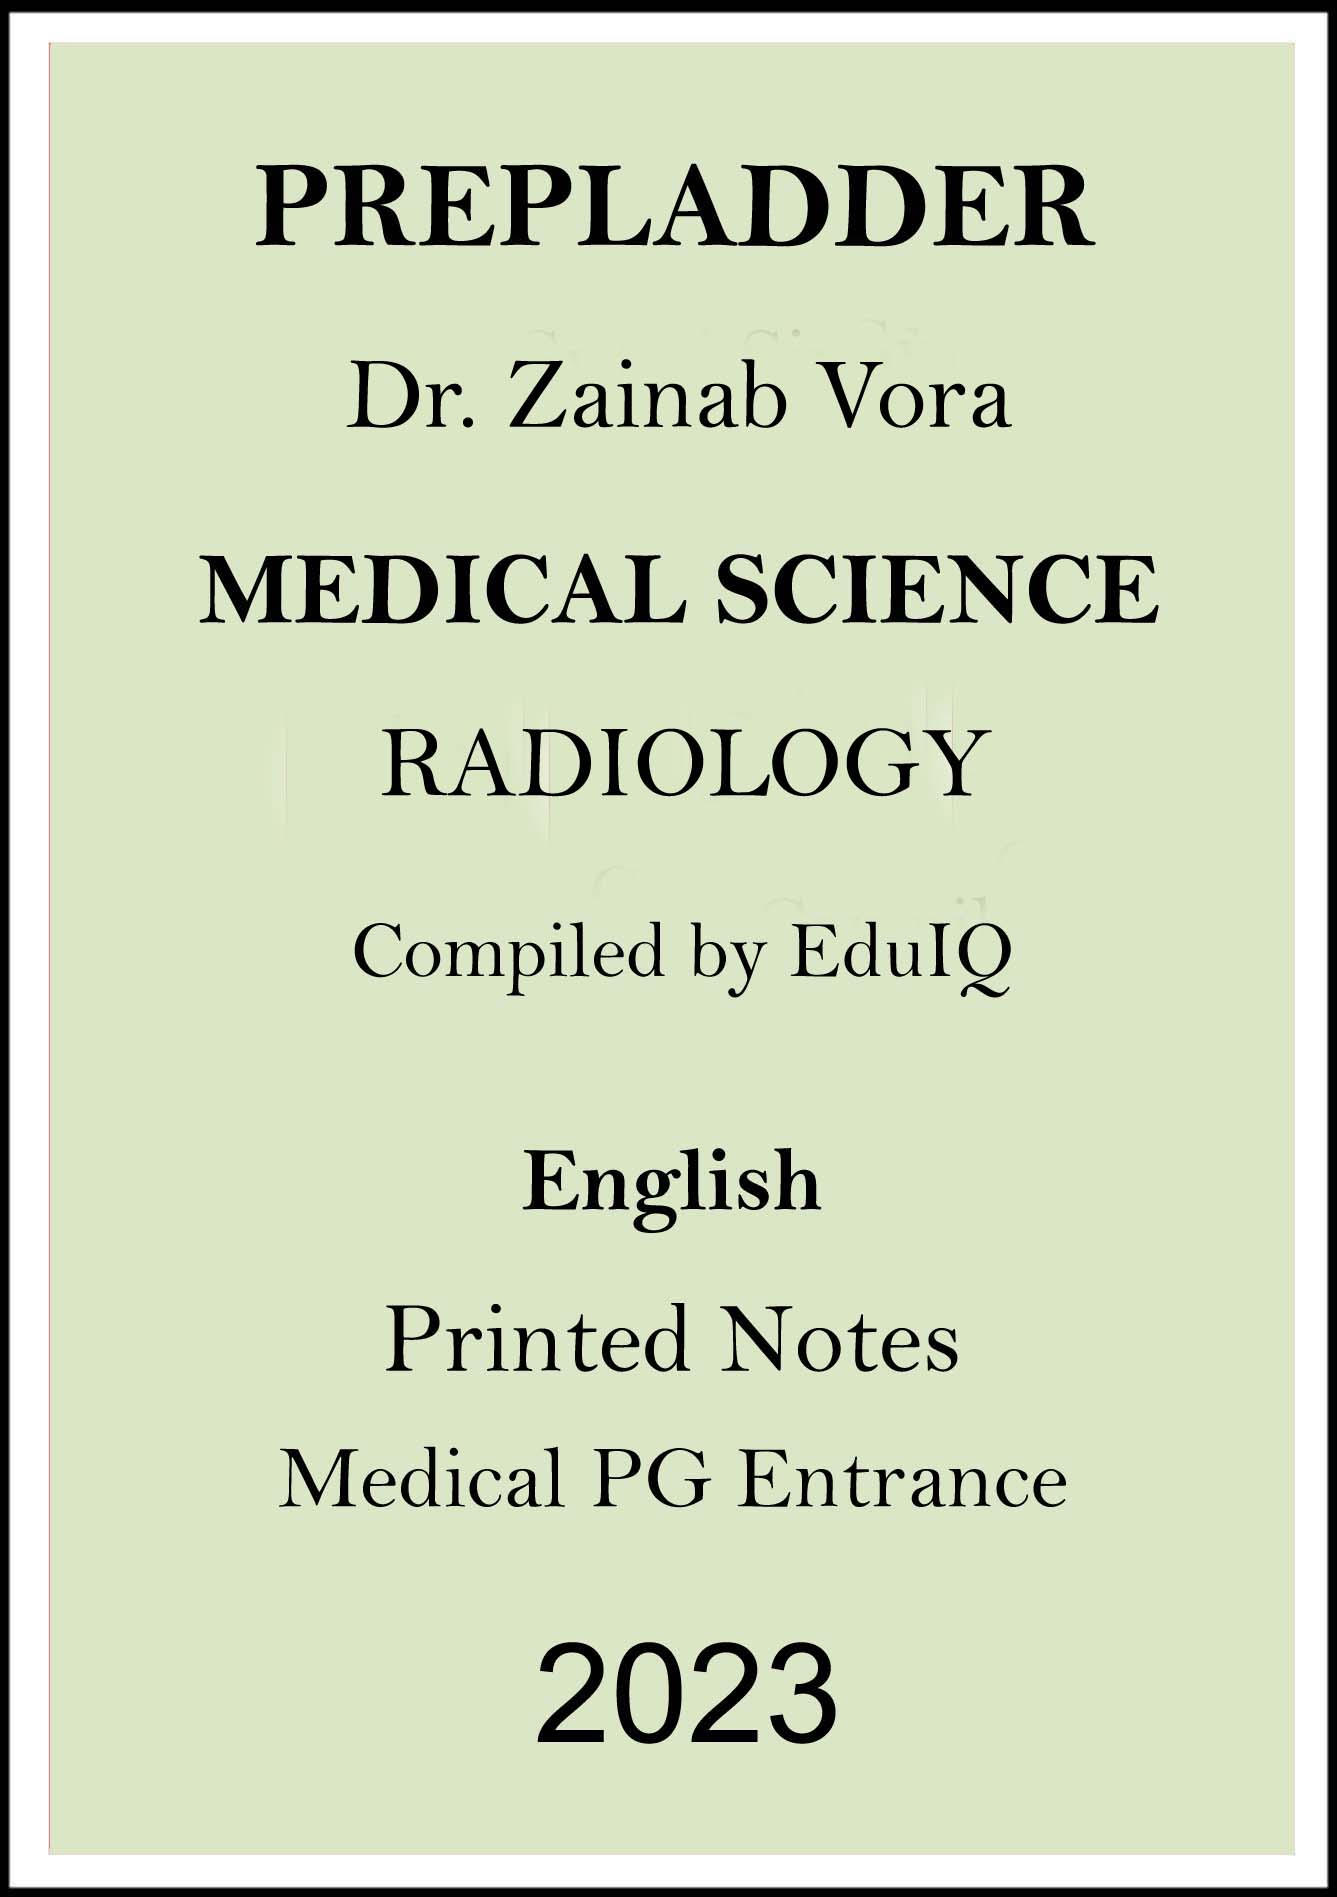 prepladder-radiology-printed-notes-by-dr-zainab-vora-for-medical-pg-entrance